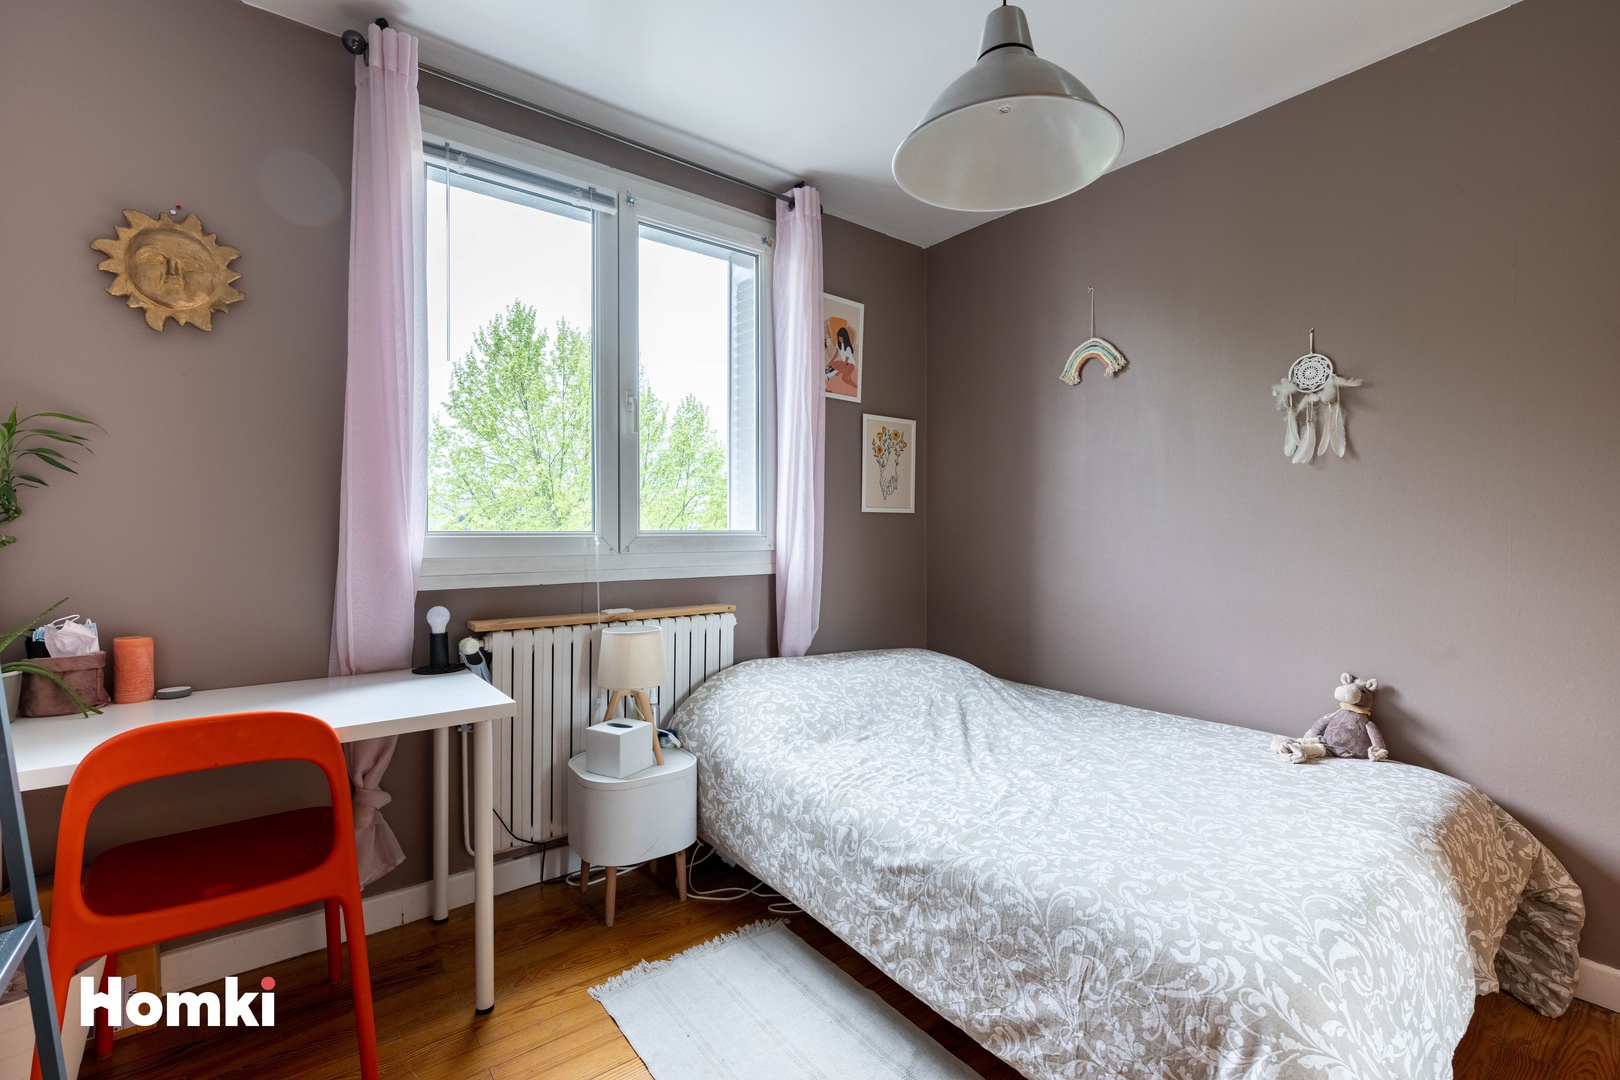 Homki - Vente Appartement  de 65.0 m² à Grenoble 38100